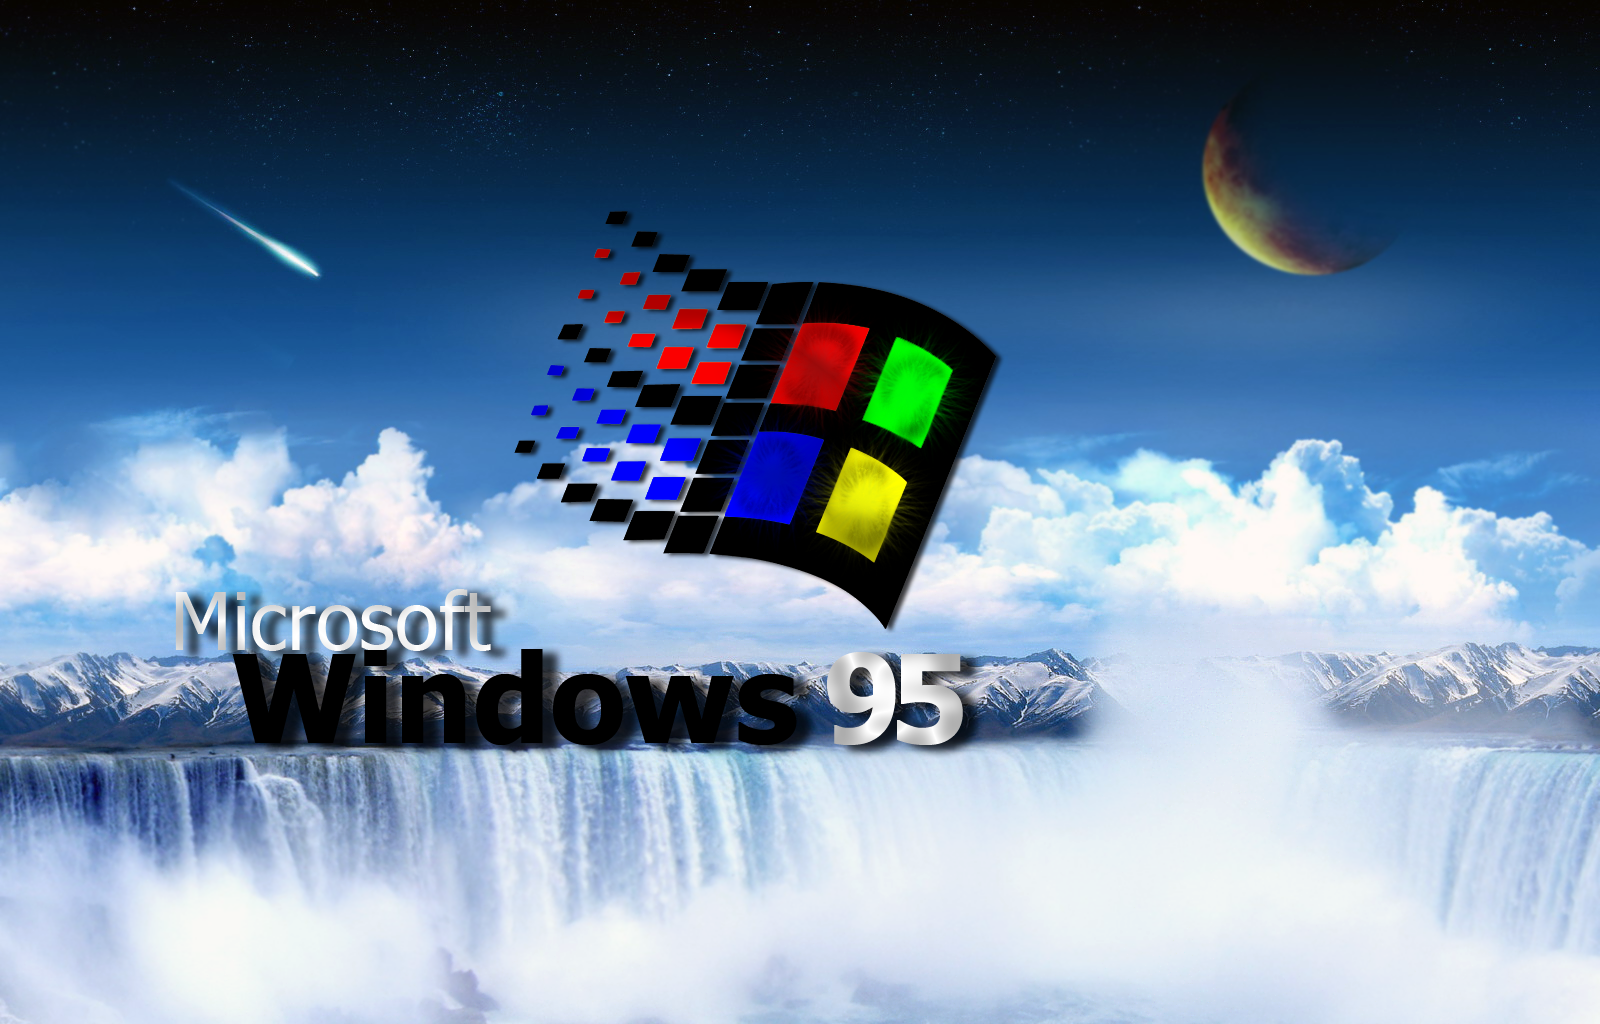 윈도우 95 벽지,운영 체제,하늘,루빅스 큐브,폰트,과학 기술